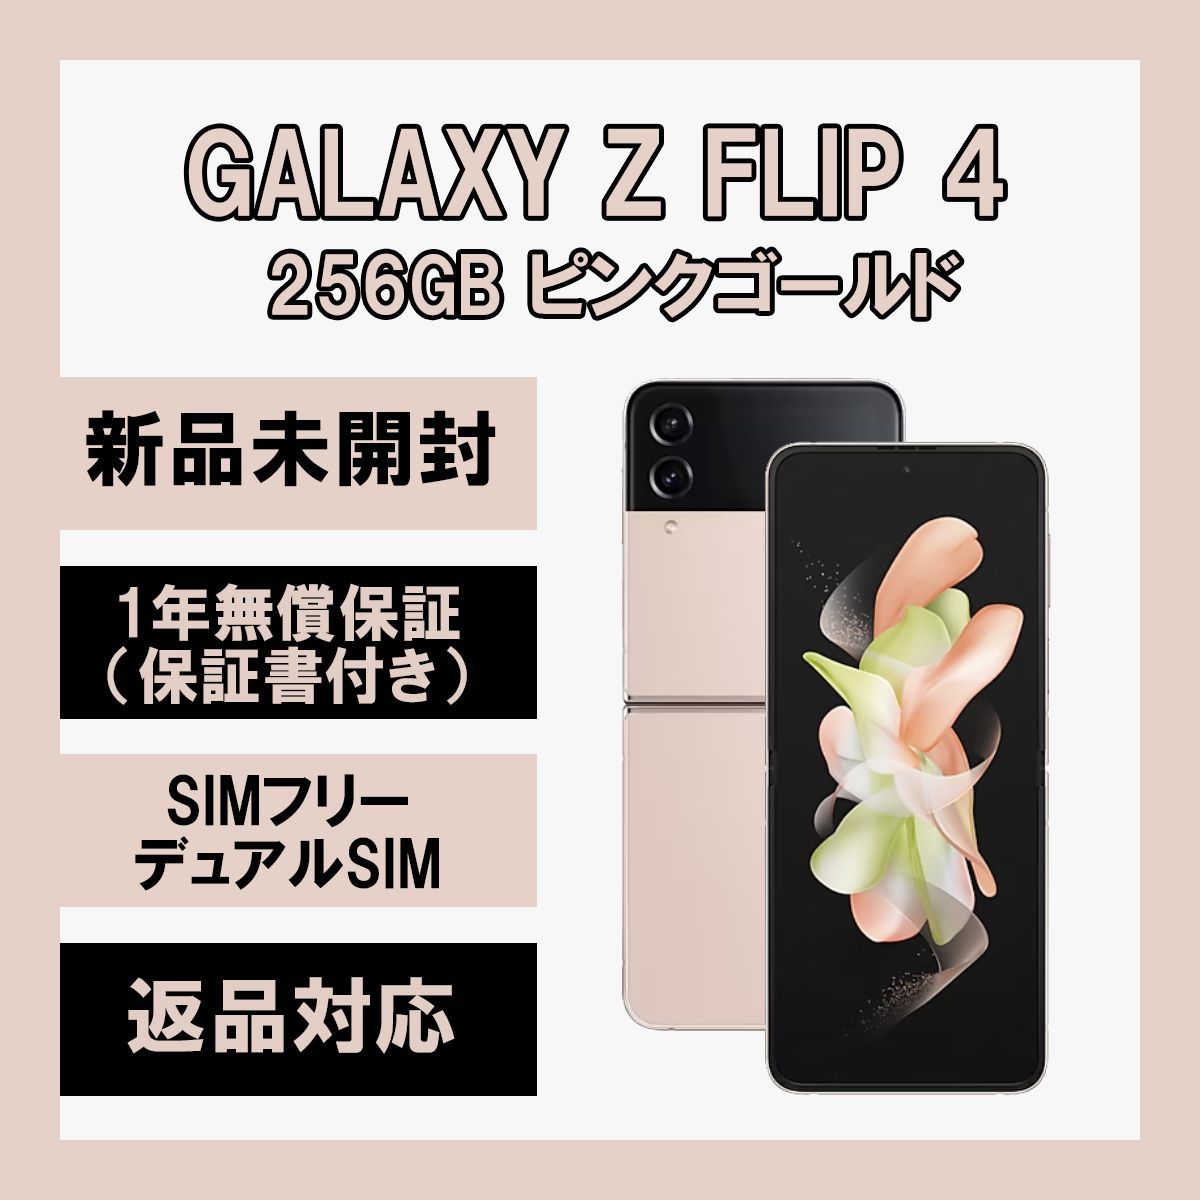 [3393] 256GB Galaxy Z Flip4 5G ピンクゴールド